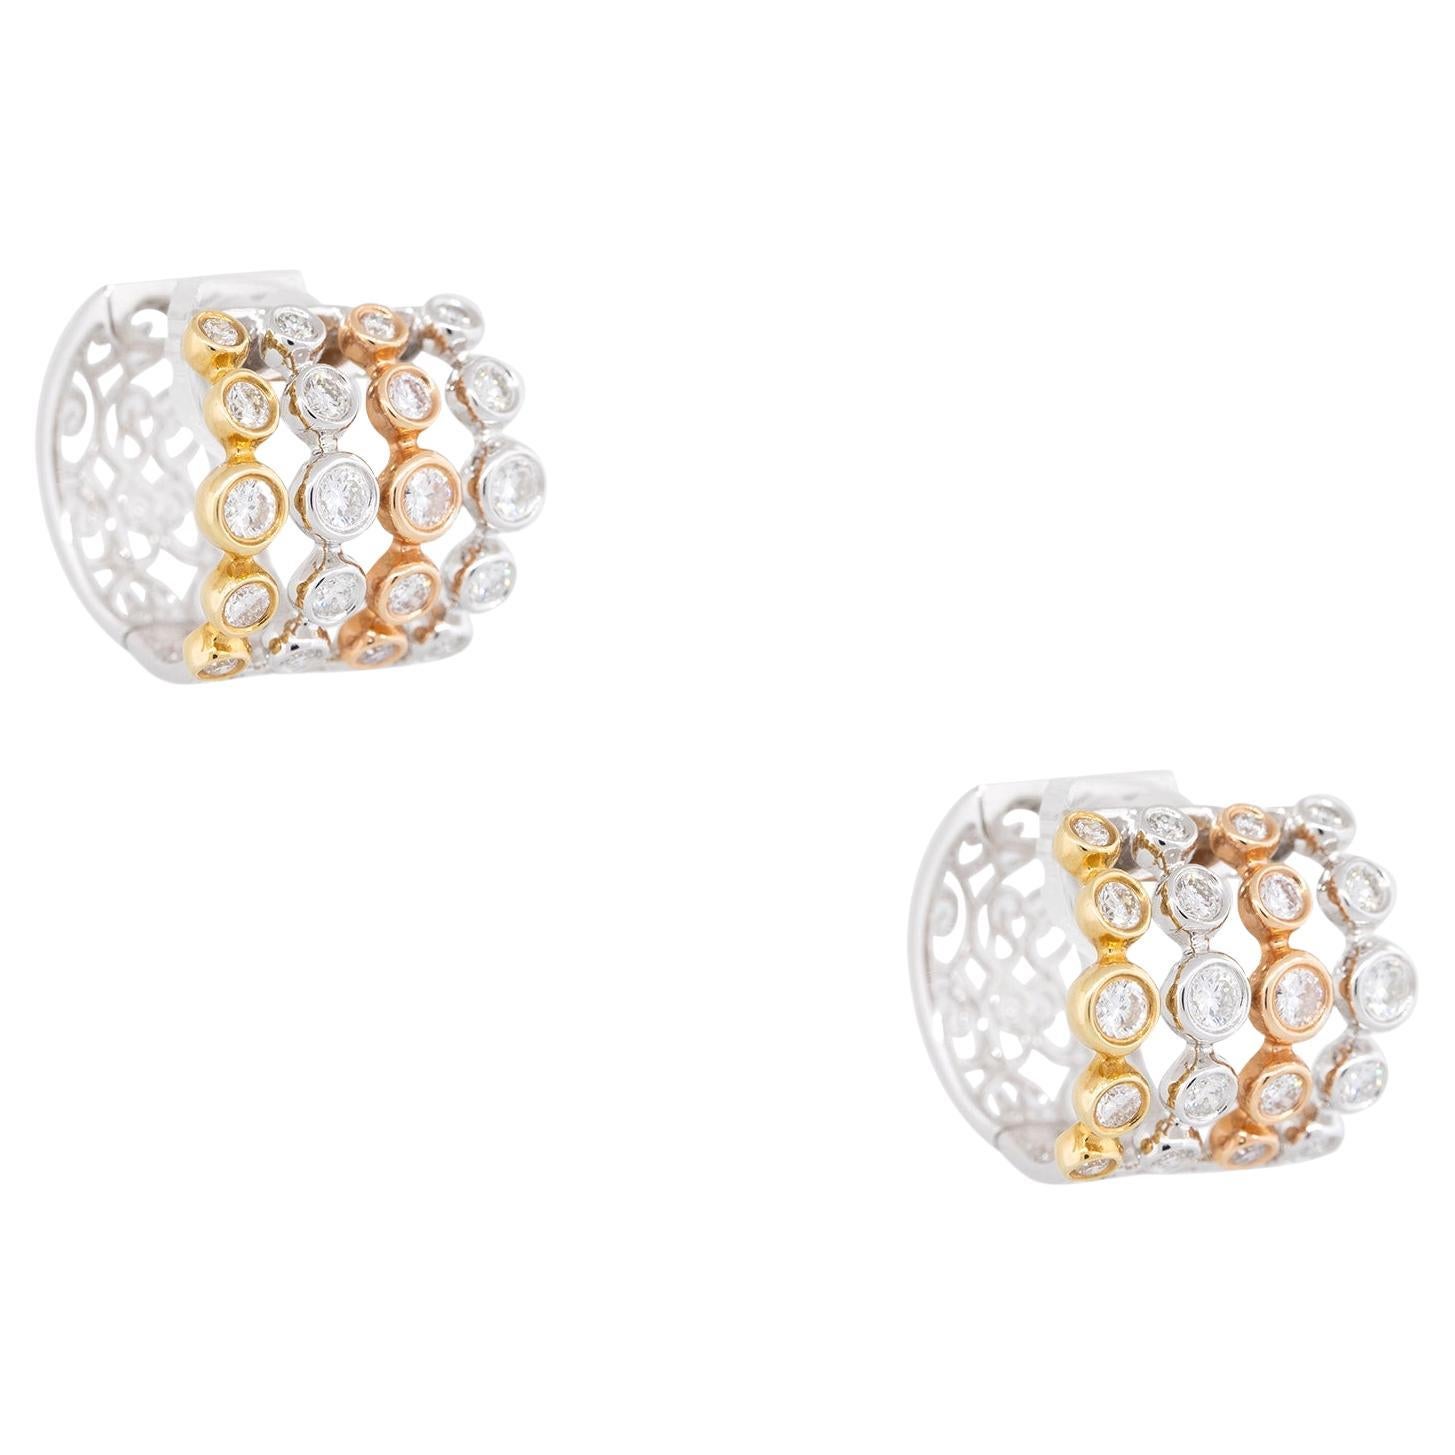 1.98 Carat Diamond 5-Row Bezel Set Hoop Earrings 18 Karat In Stock For Sale